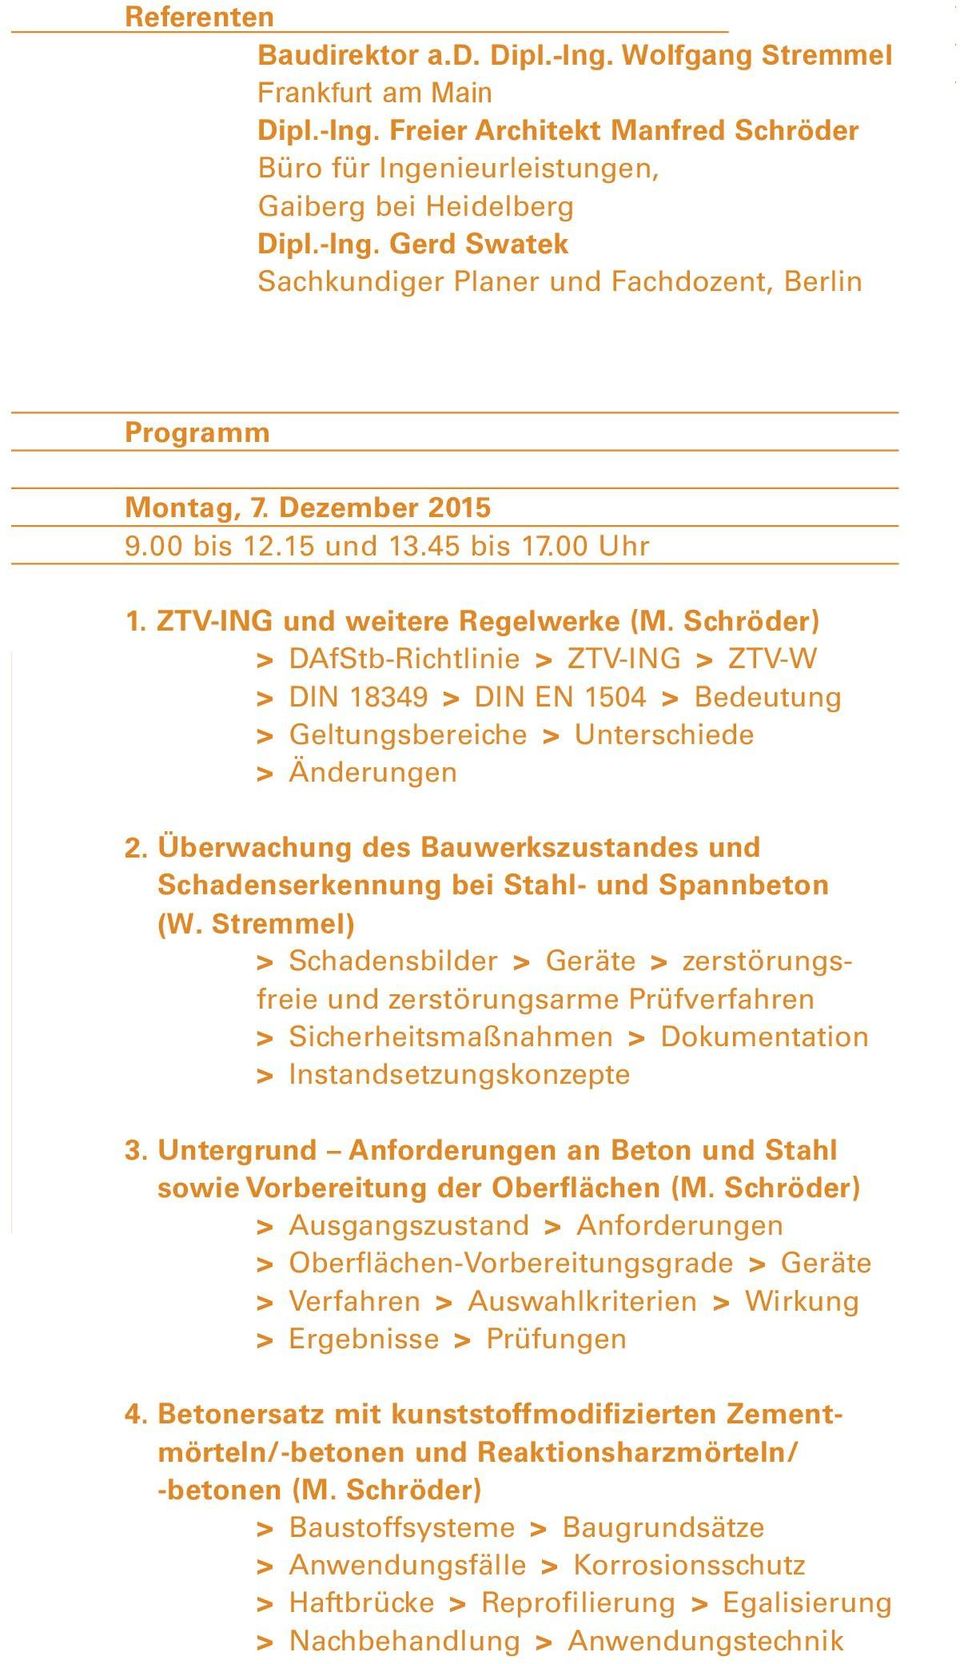 Schröder) > DAfStb-Richtlinie > ZTV-ING > ZTV-W > DIN 18349 > DIN EN 1504 > Bedeutung > Geltungsbereiche > Unterschiede > Änderungen 2.